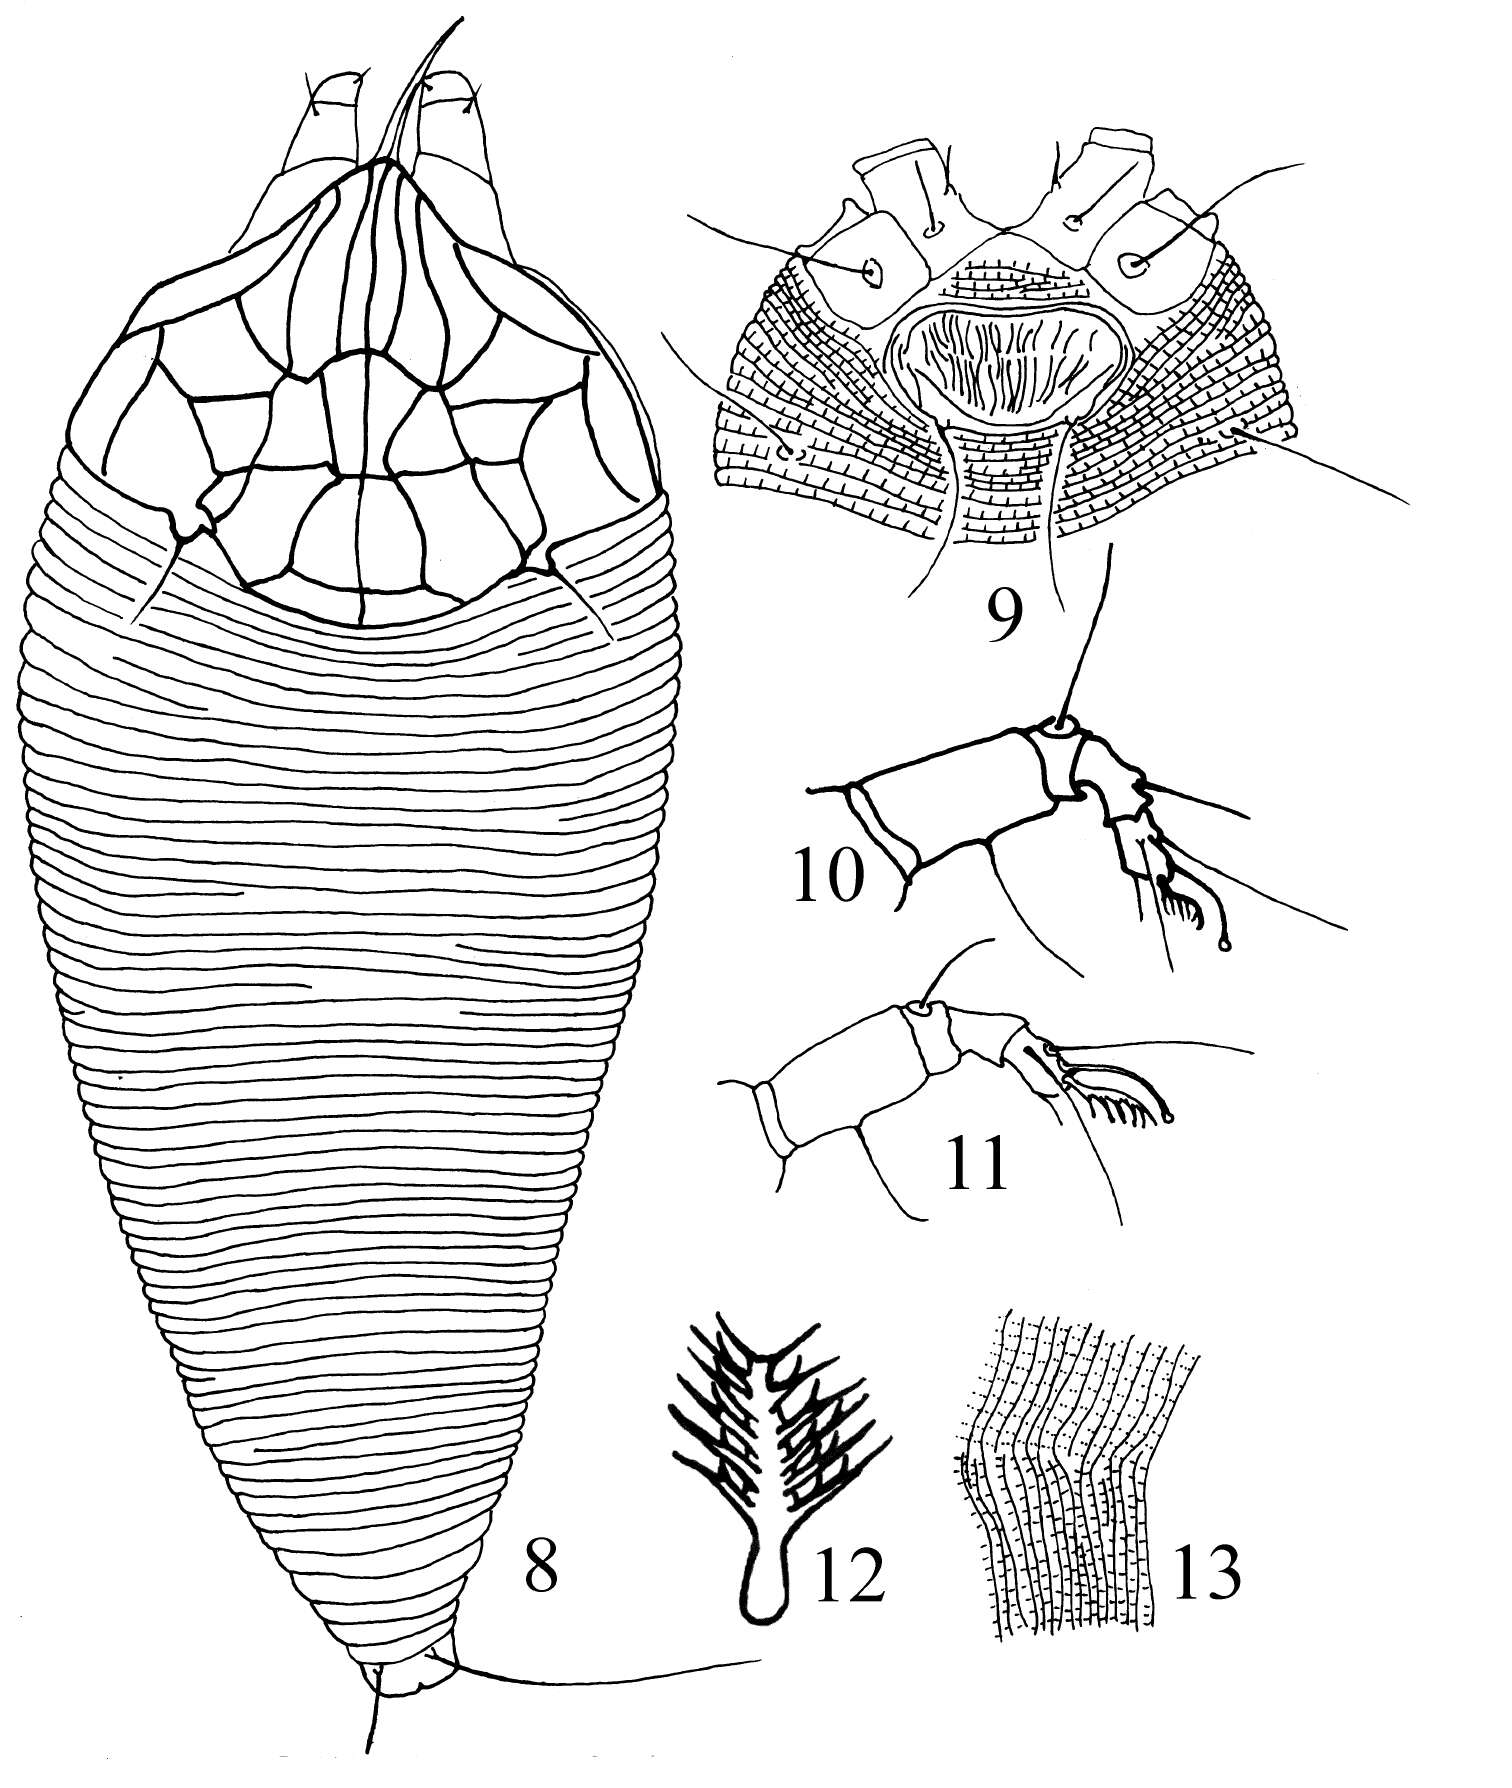 Image of Gammaphytoptus schimae Wang, Wei & Yang 2012